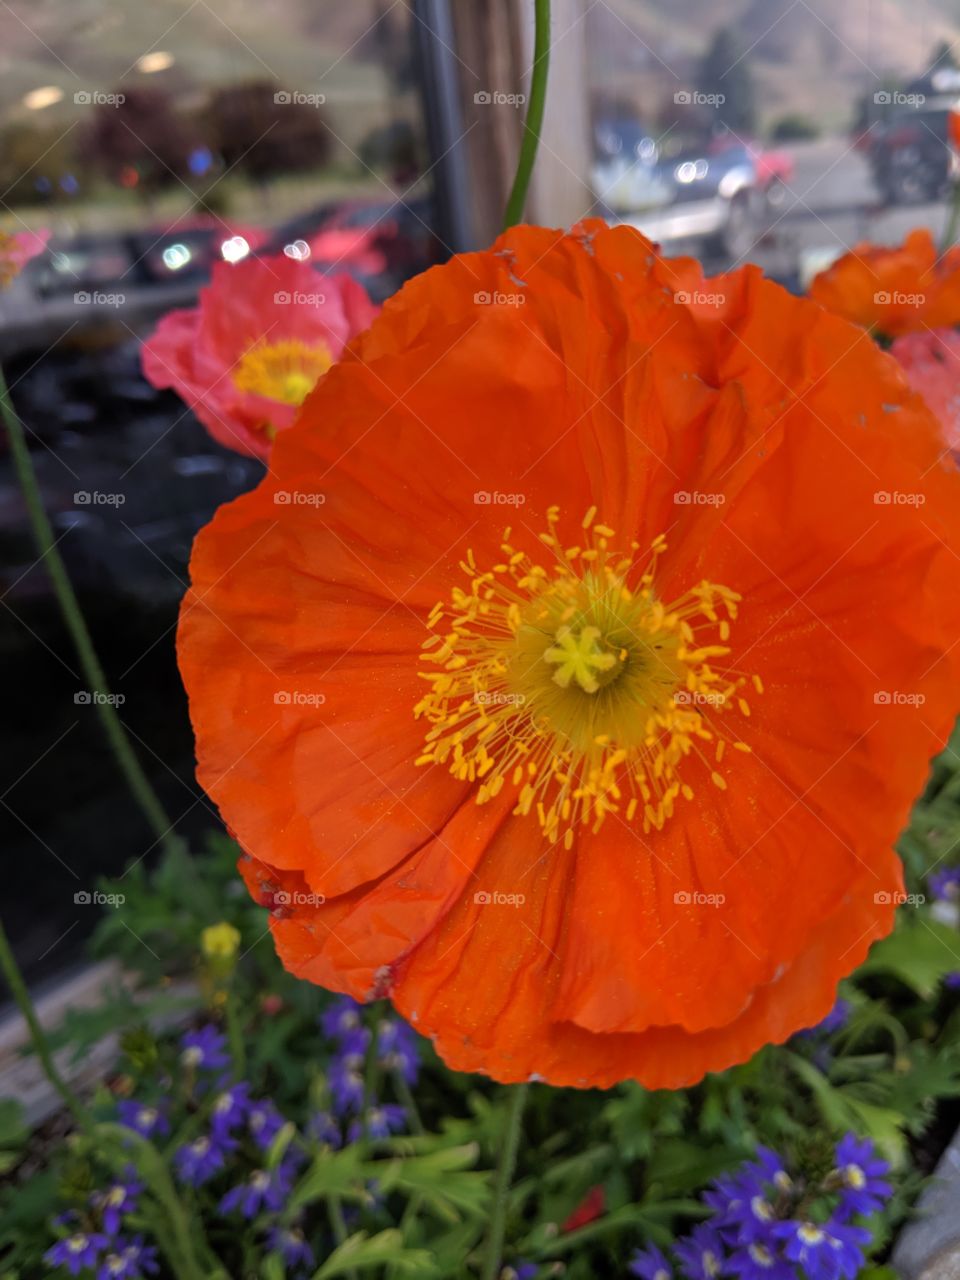 beautiful Flowers in Hailey,Utah